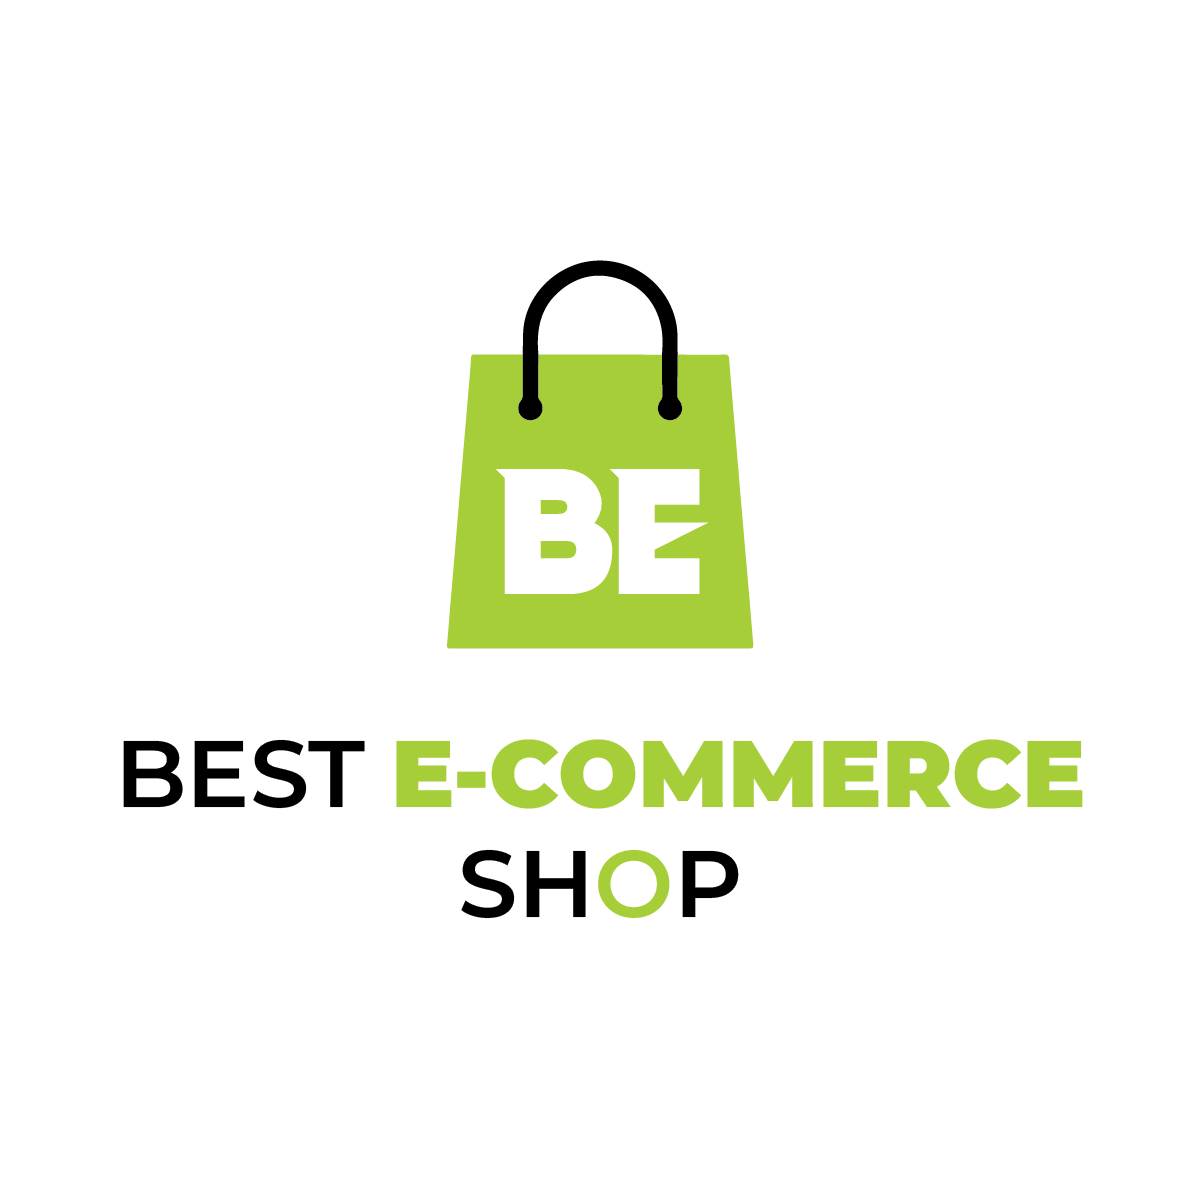 Best E-Commerce Shop